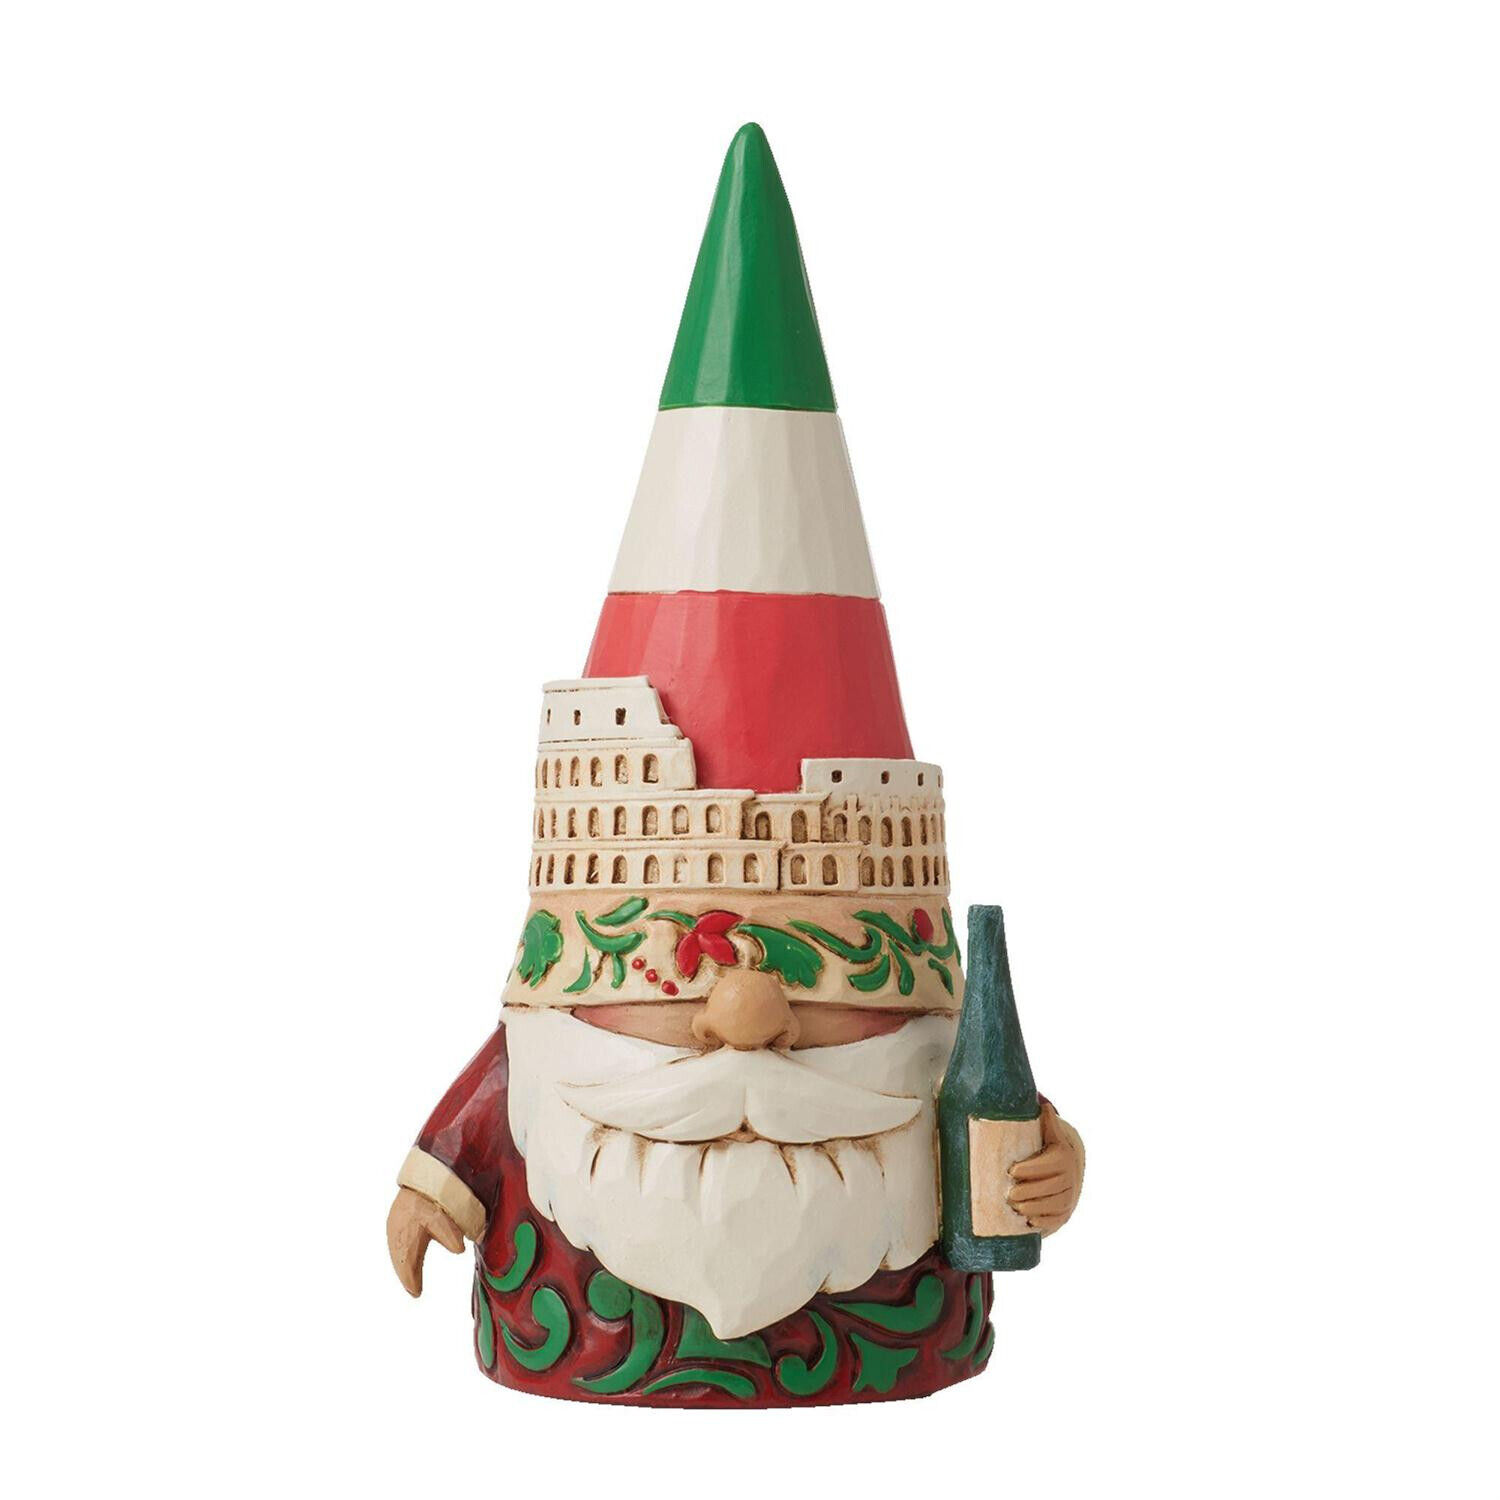 Jim Shore Italian Gnome Figurine, 5.75 Inches